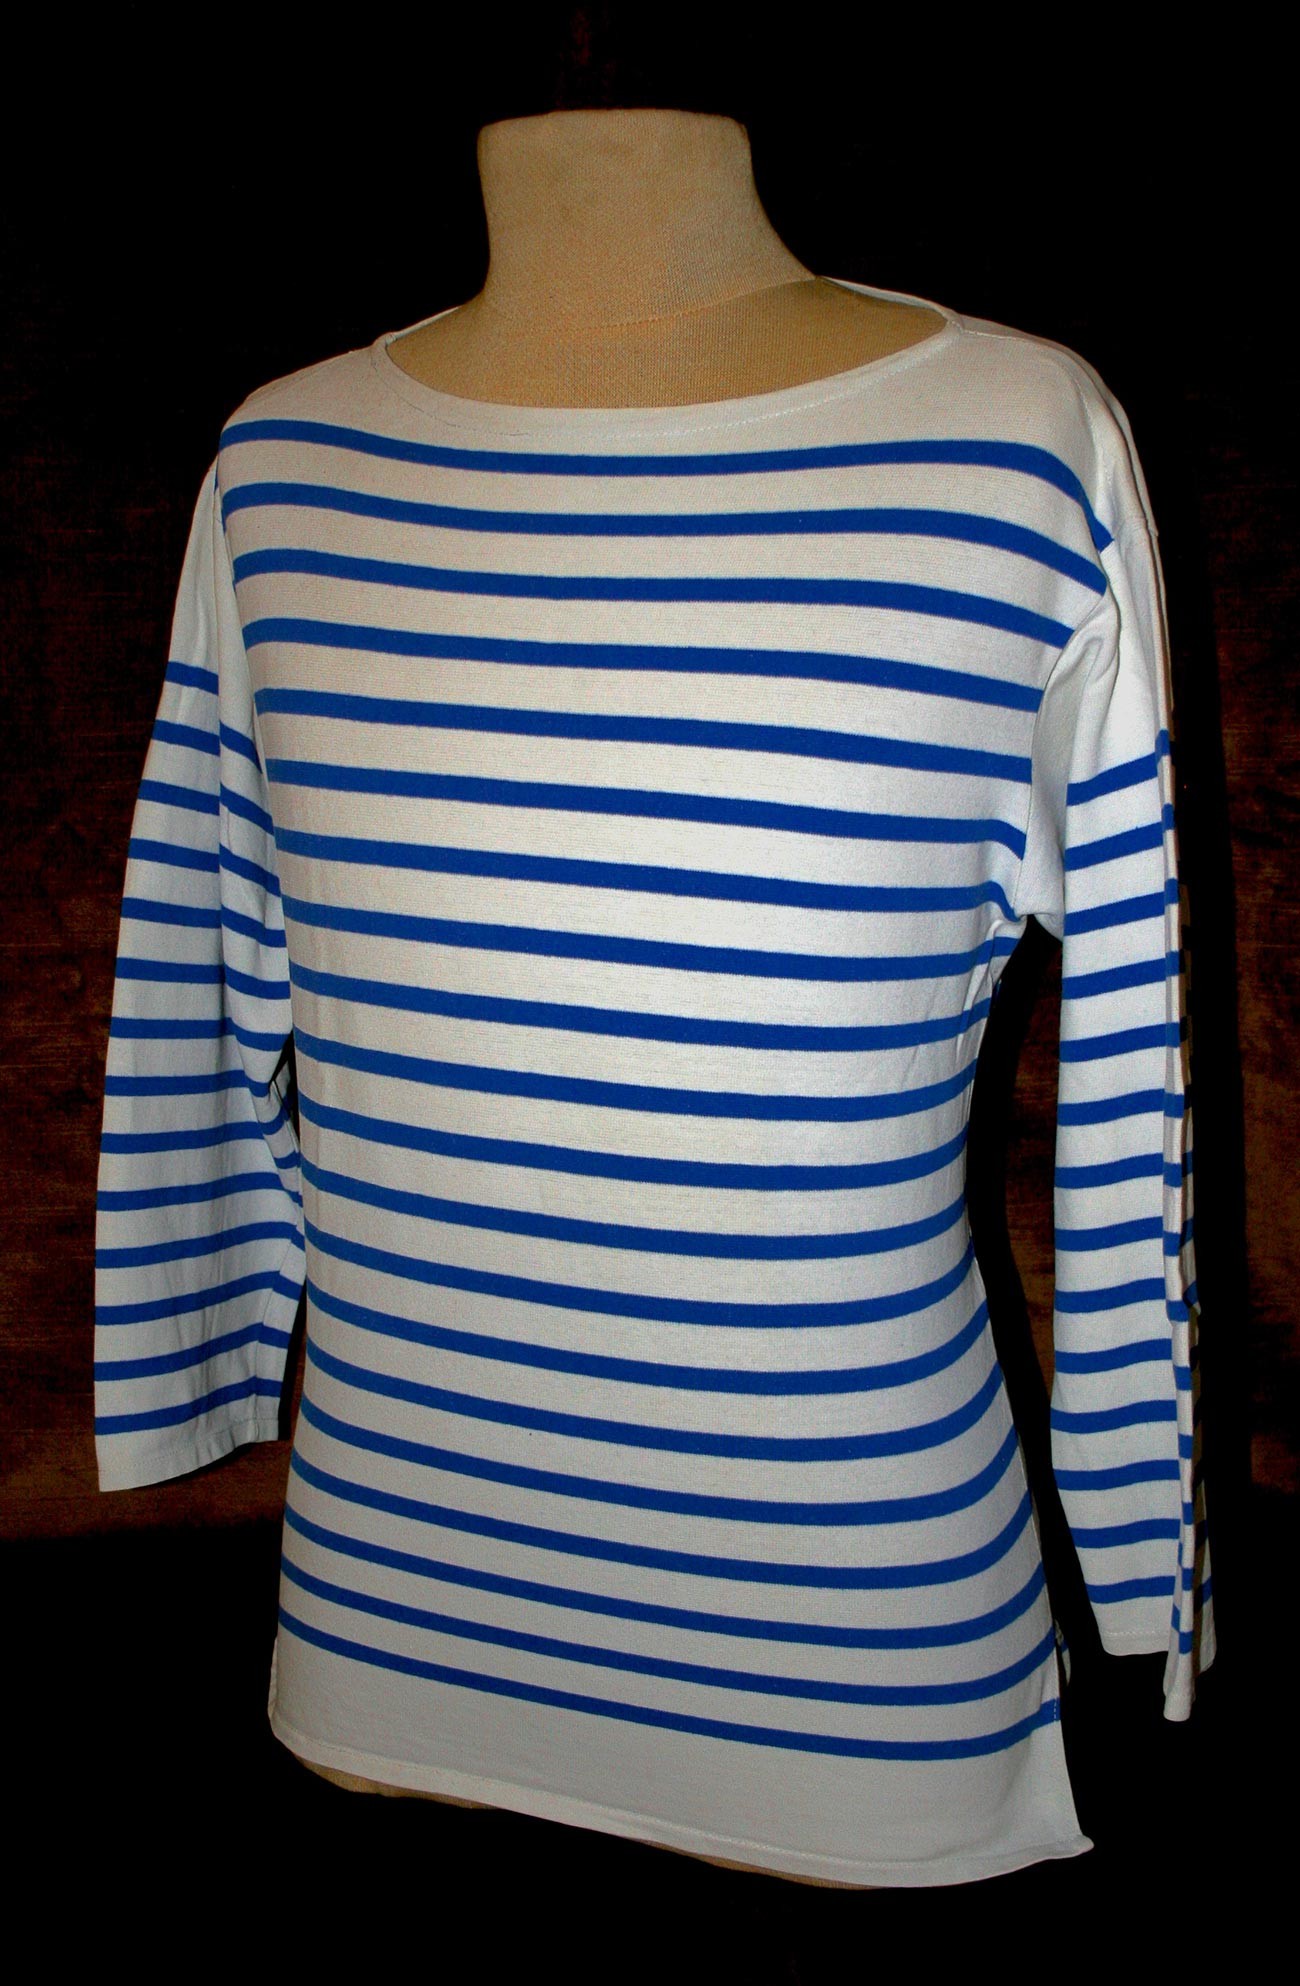  Marinière (tricot breton) de la marine française